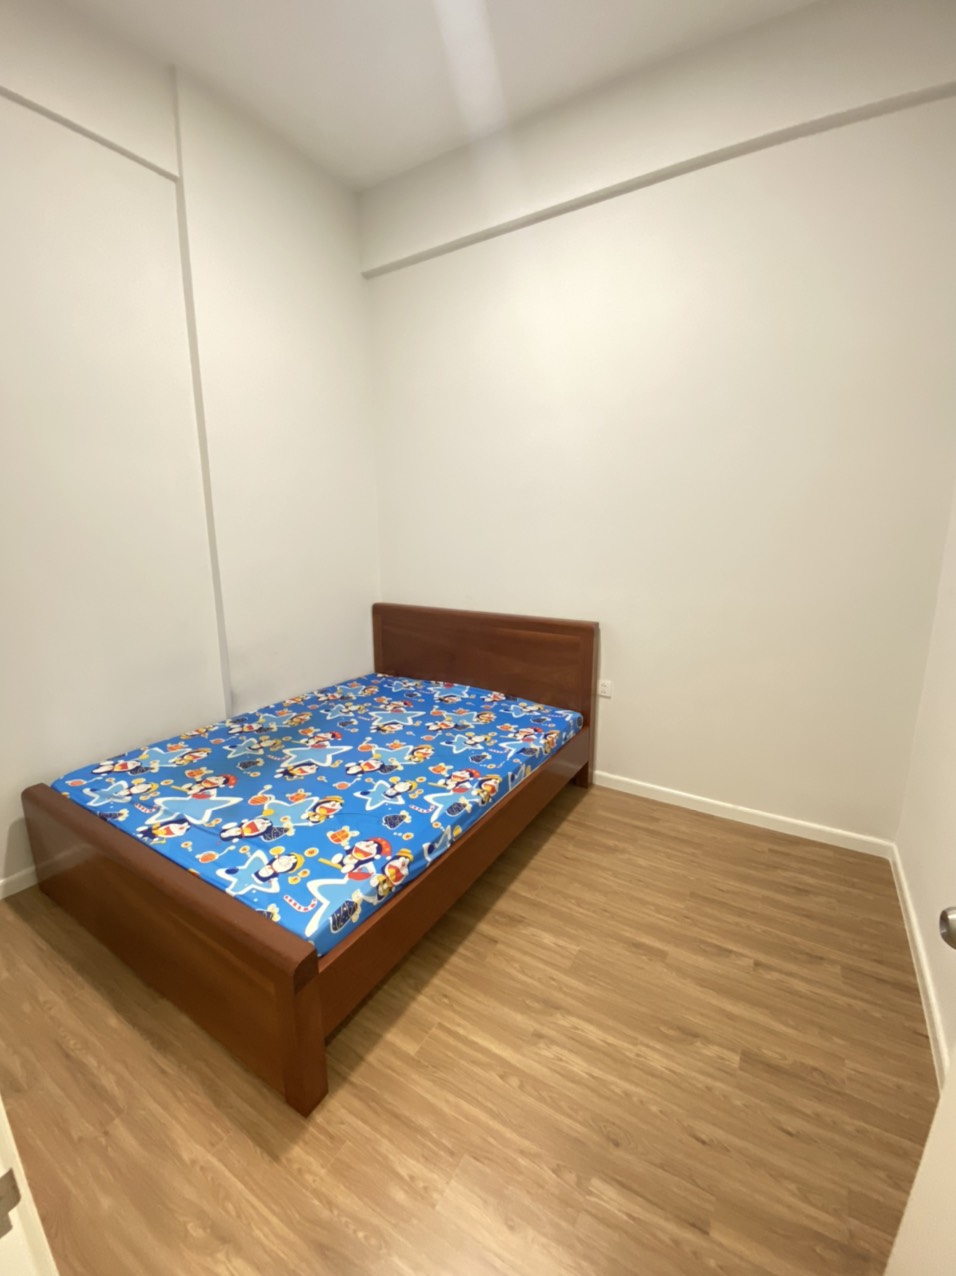 💥💥 Cho thuê căn hộ Mone Gia Định - 2 phòng ngủ full đồ / 72m2 #15Tr, Vào Ở Ngay Tel 0942811343